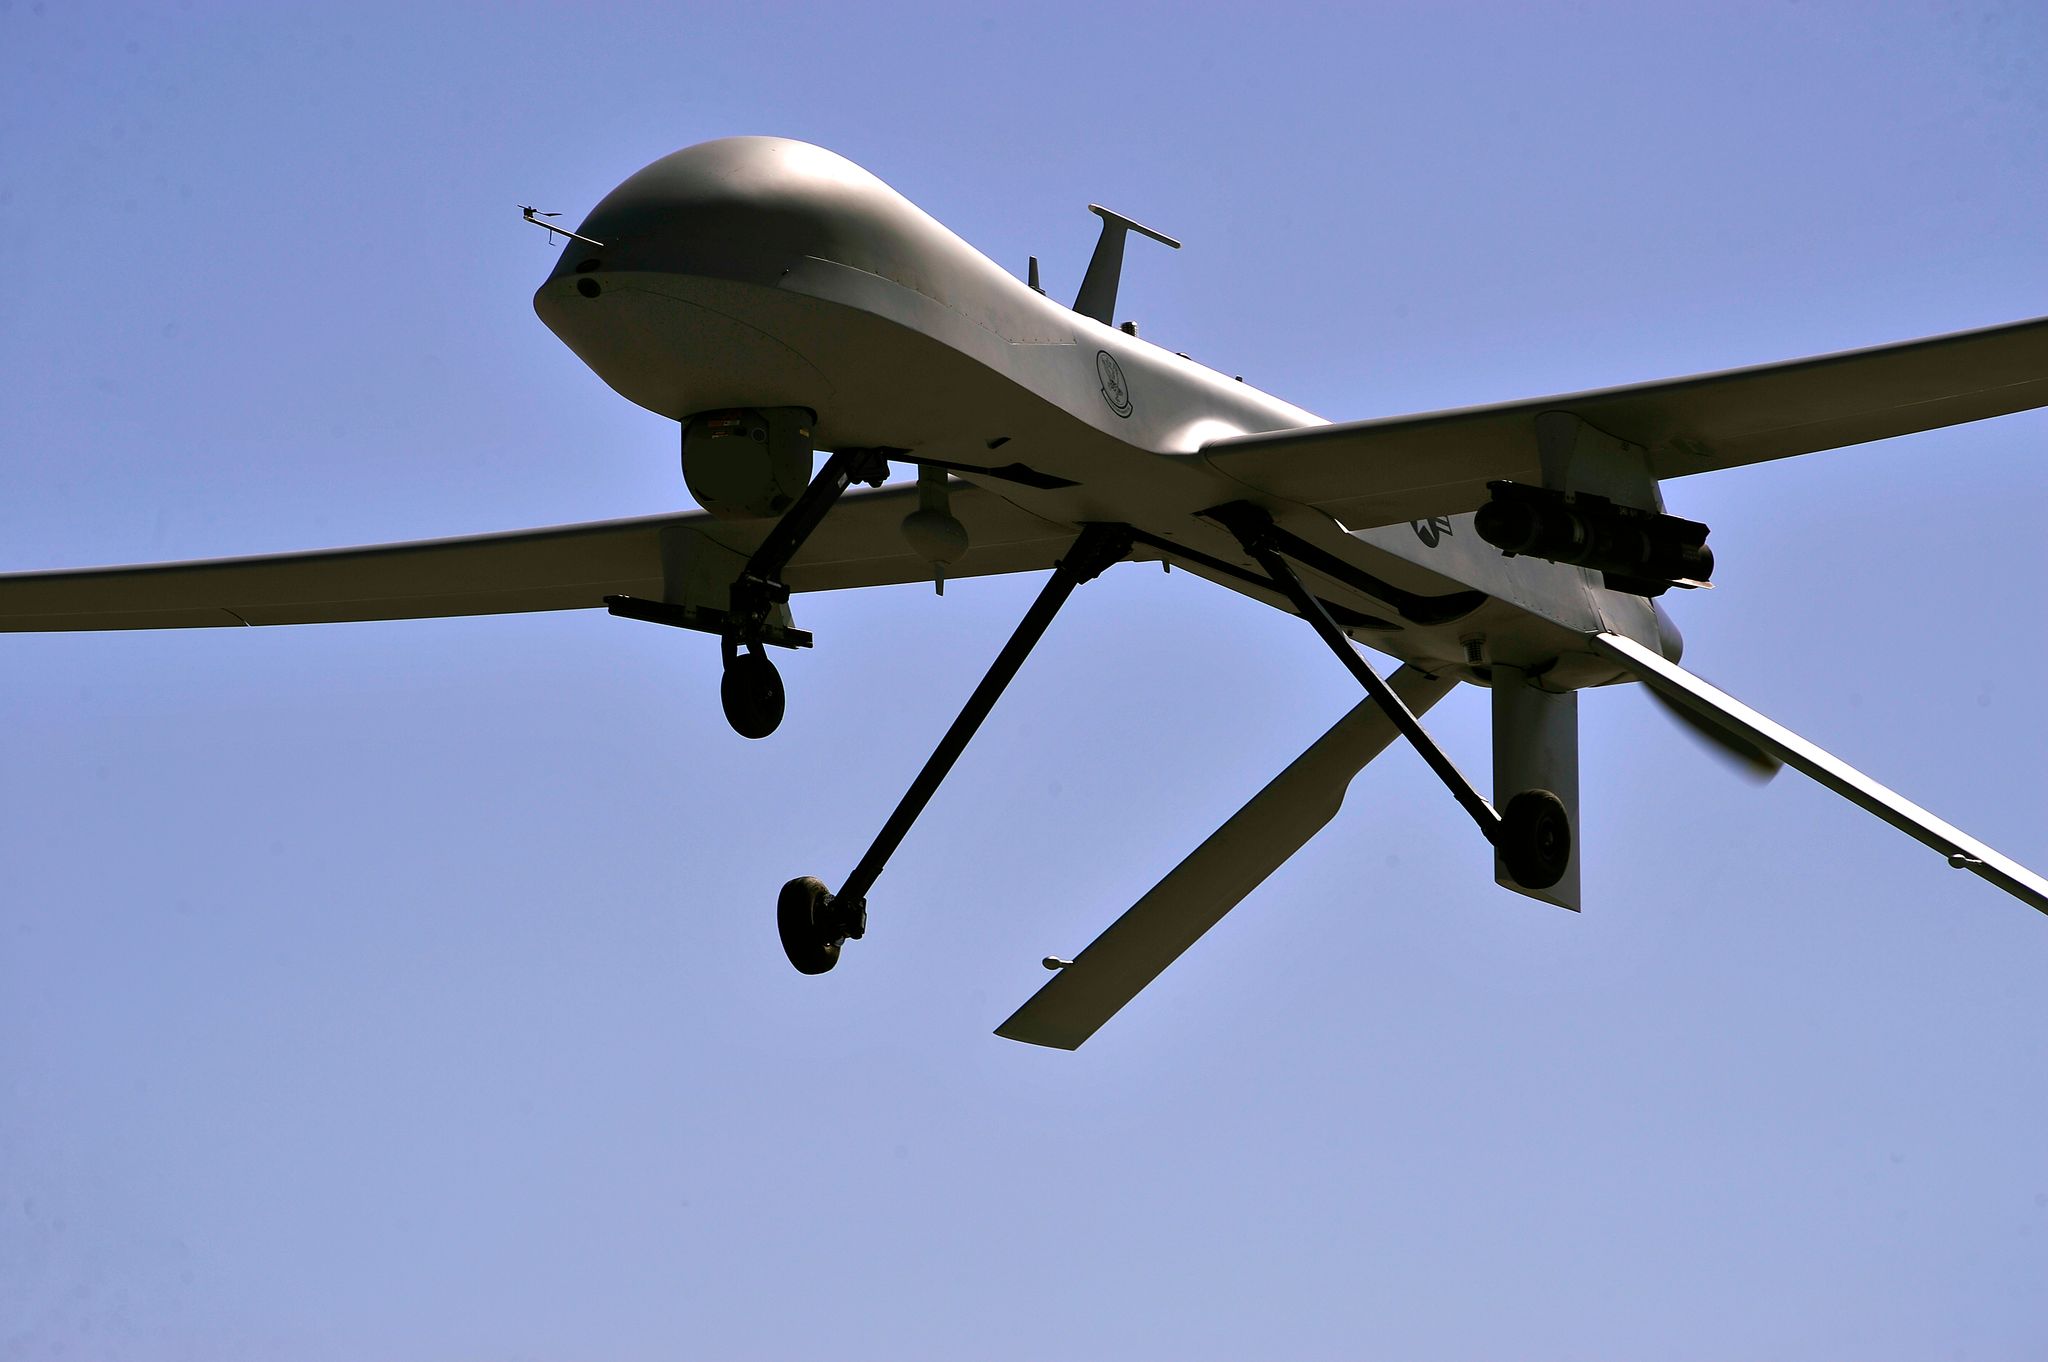 Les forces allemandes peinent à faire cesser les vols suspects de drones  près de leurs sites d'entraînement - Zone Militaire